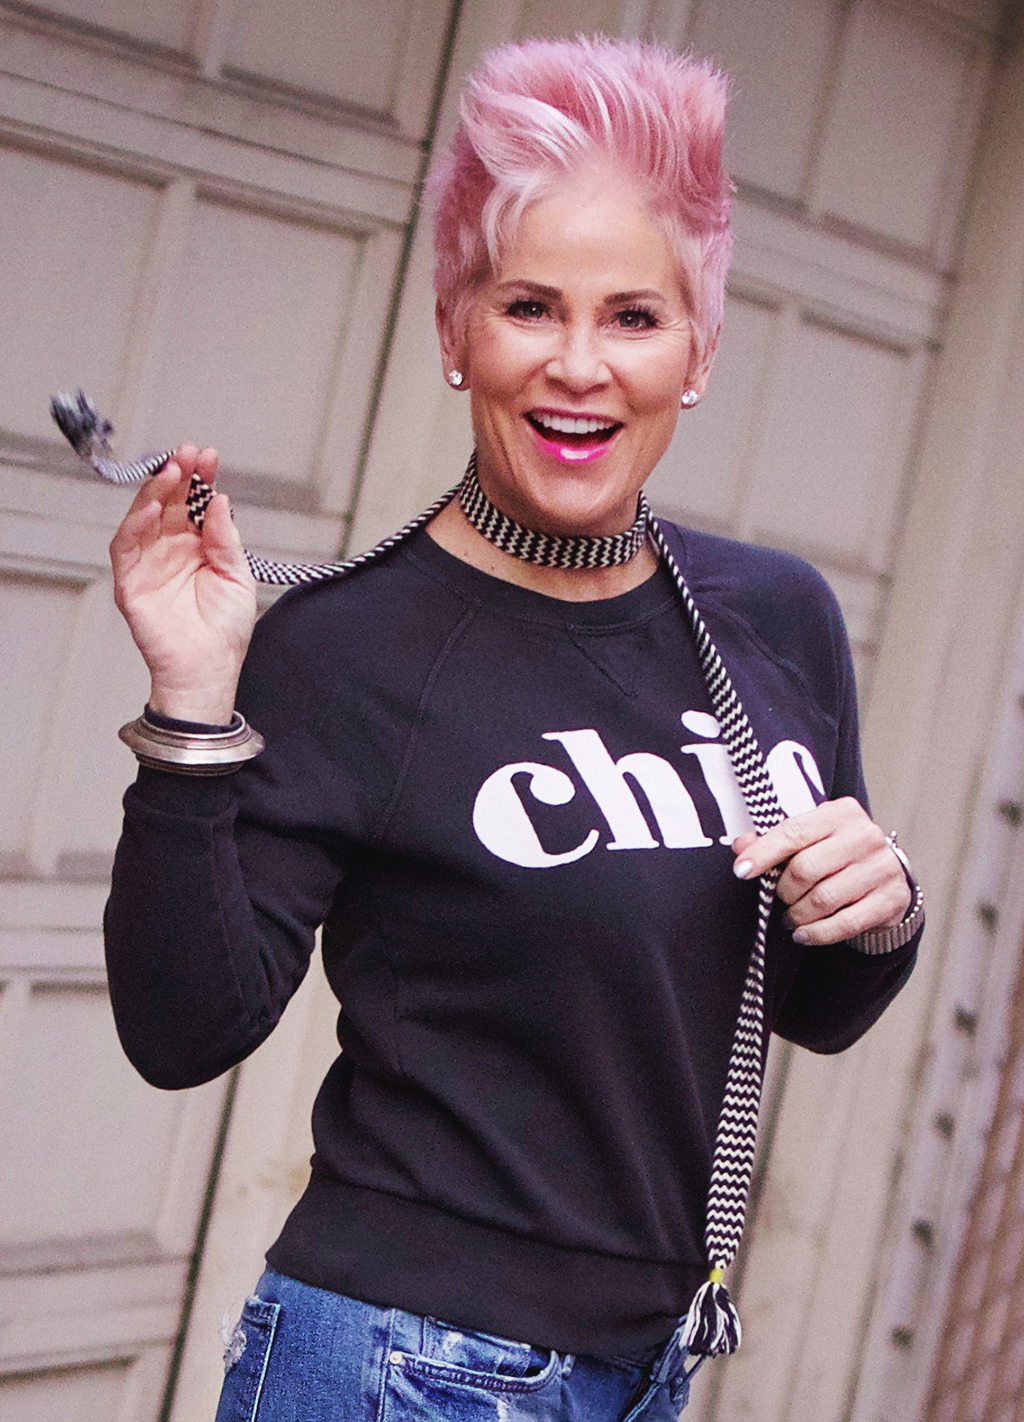 CHIC Sweatshirt! - Chic Over 50